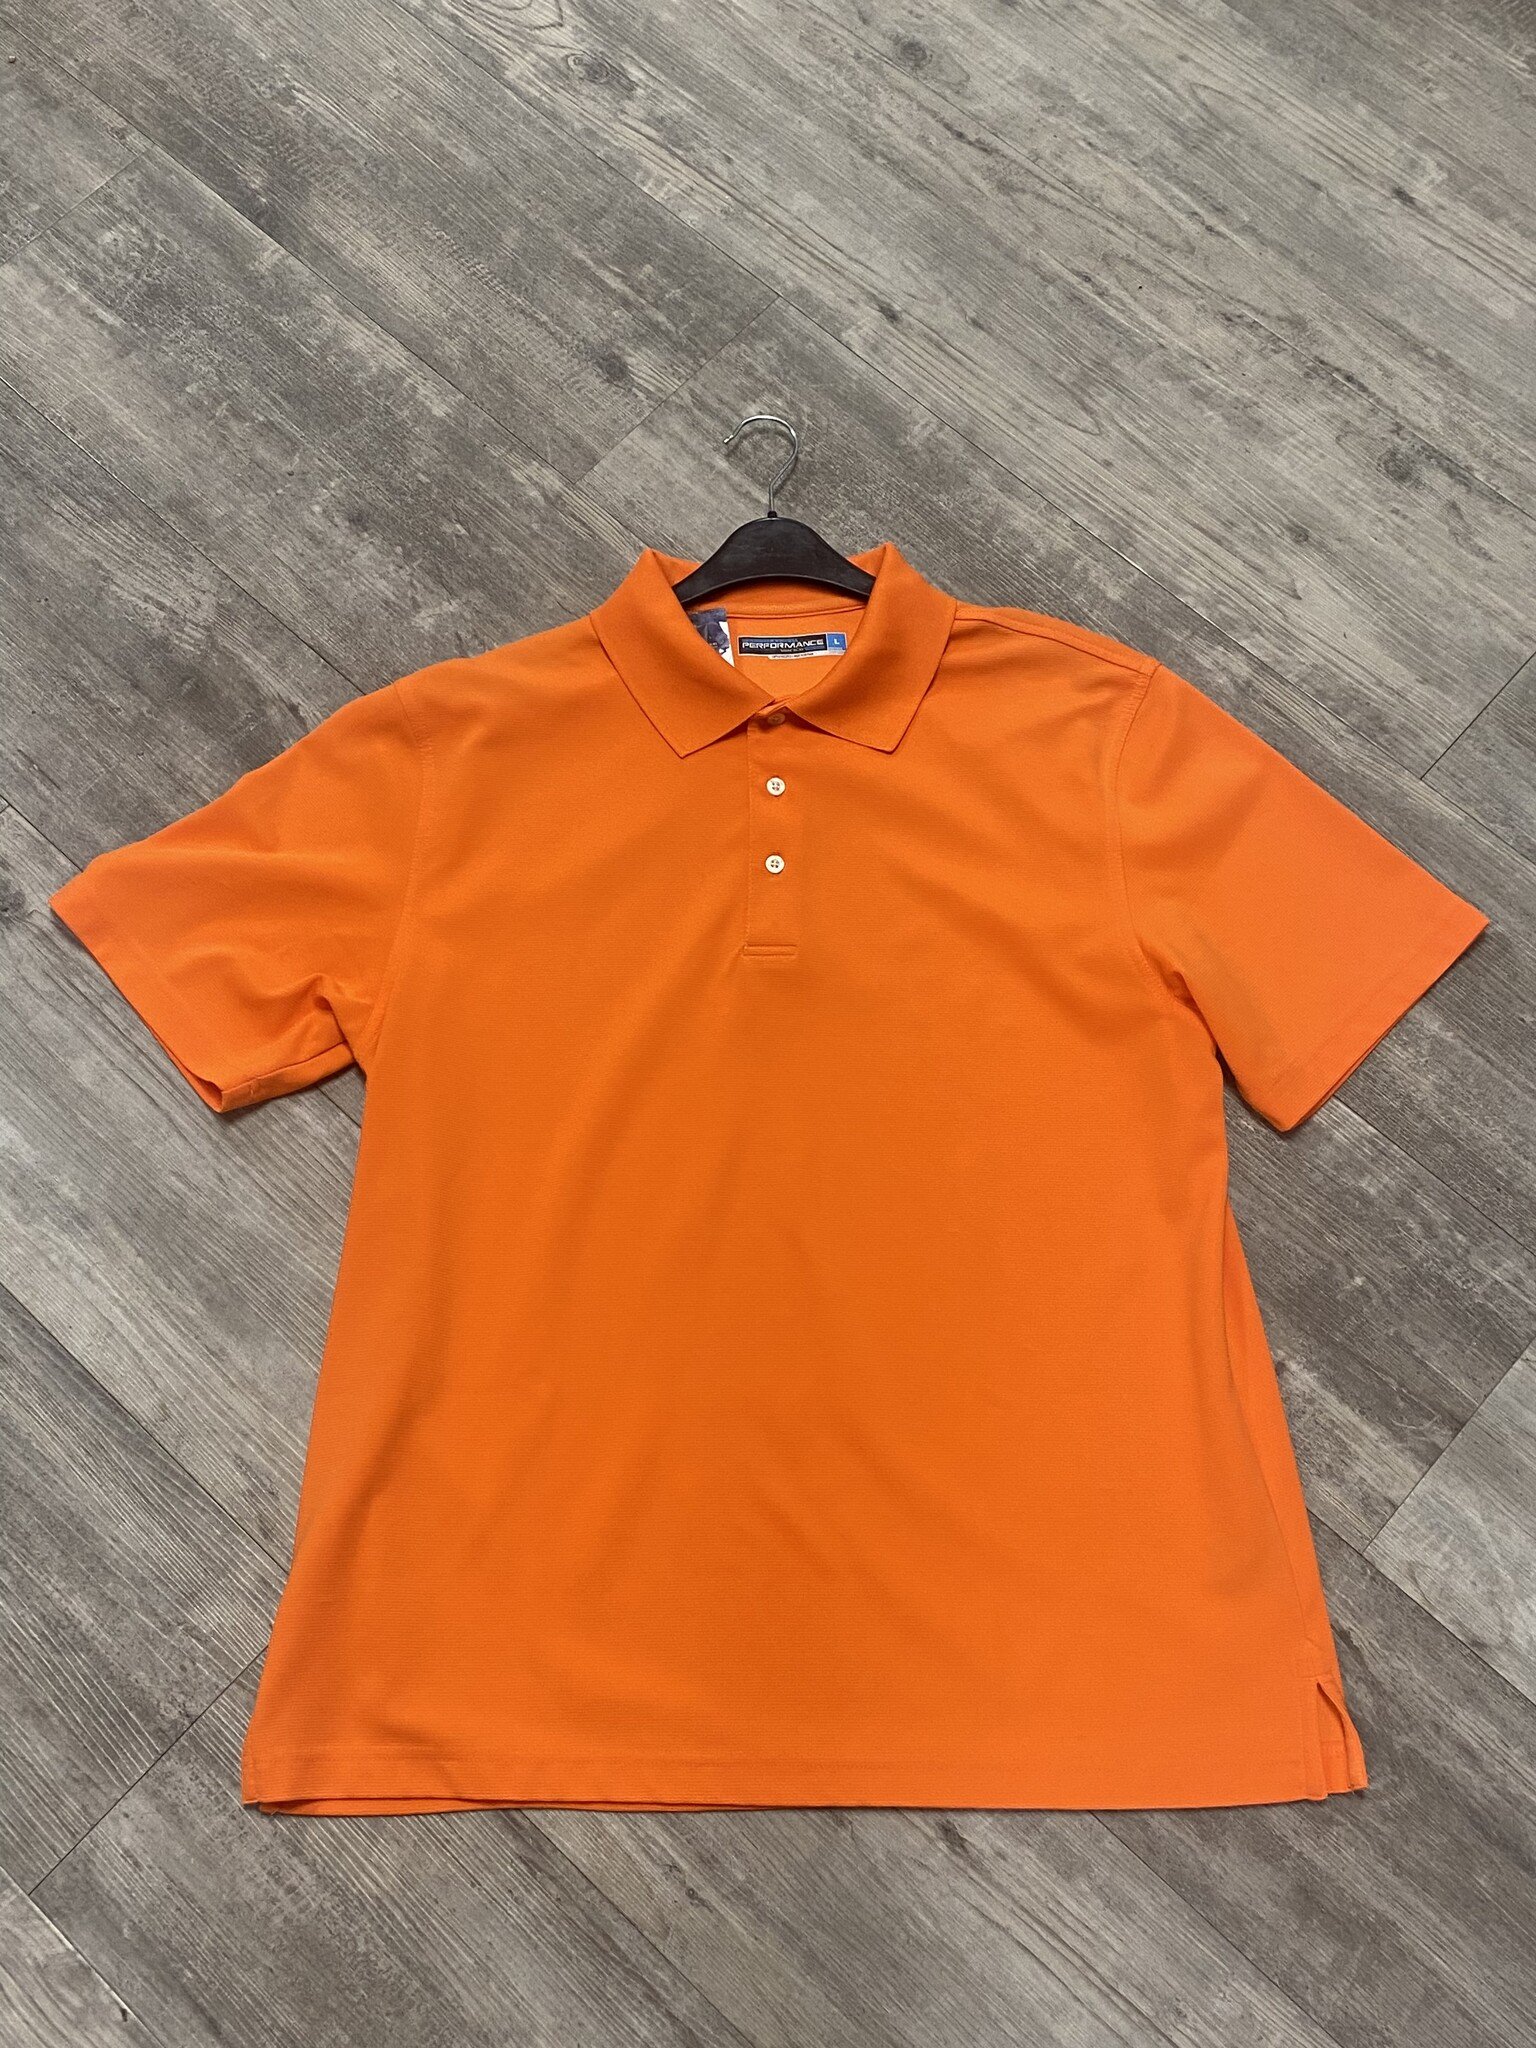 Orange Polo Size L